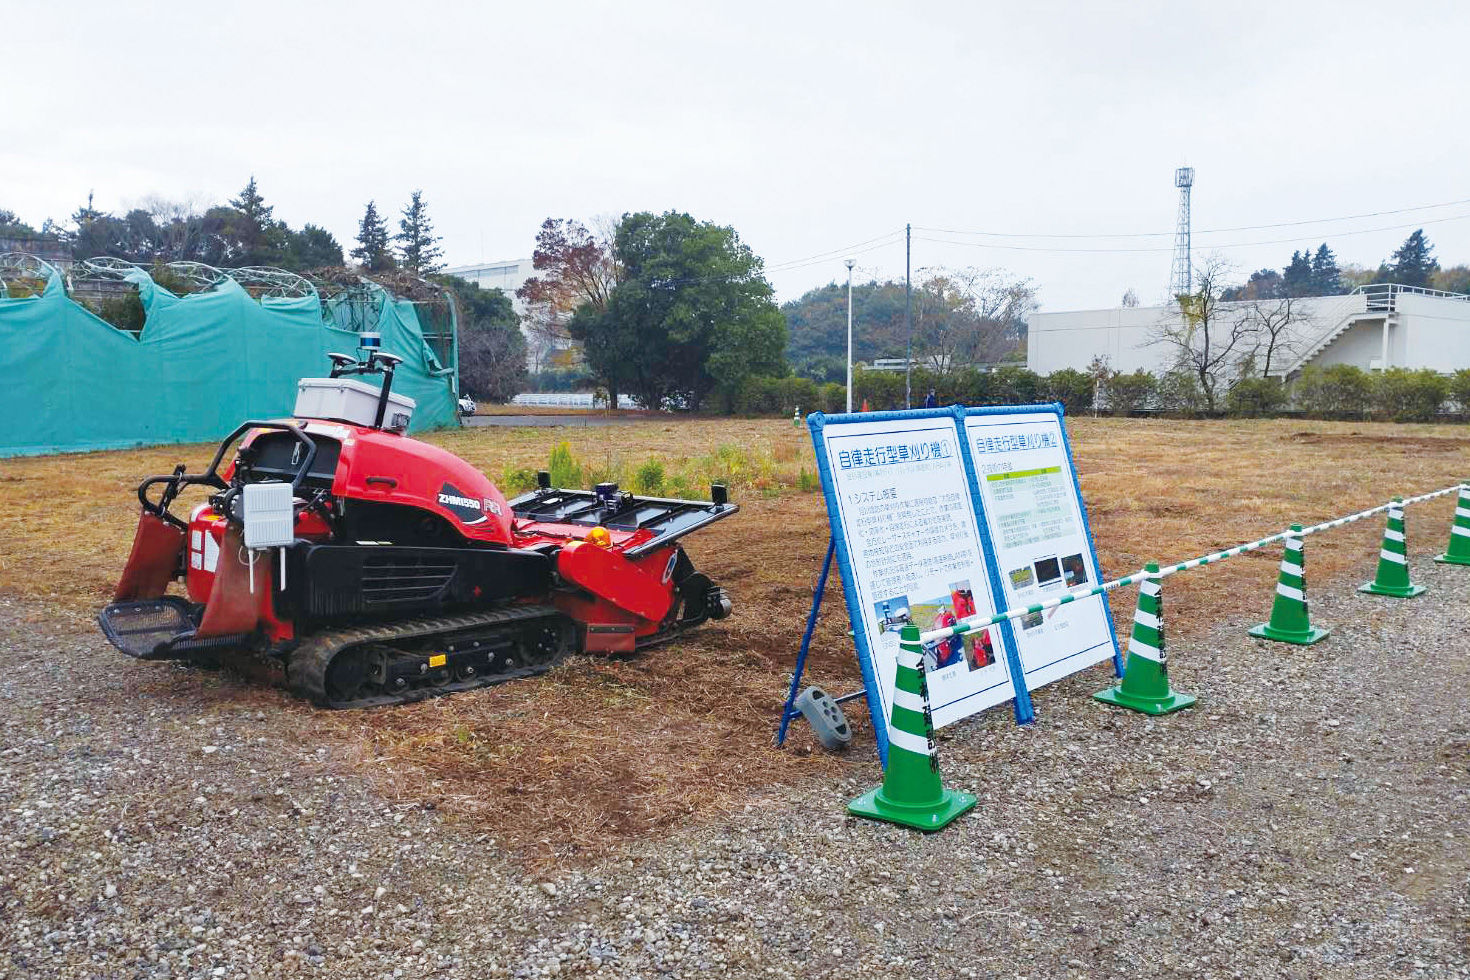 「建設DX実験フィールド」で実演した「自律走行型草刈り機」は、ベンチャー企業4社のスクラムで開発された。